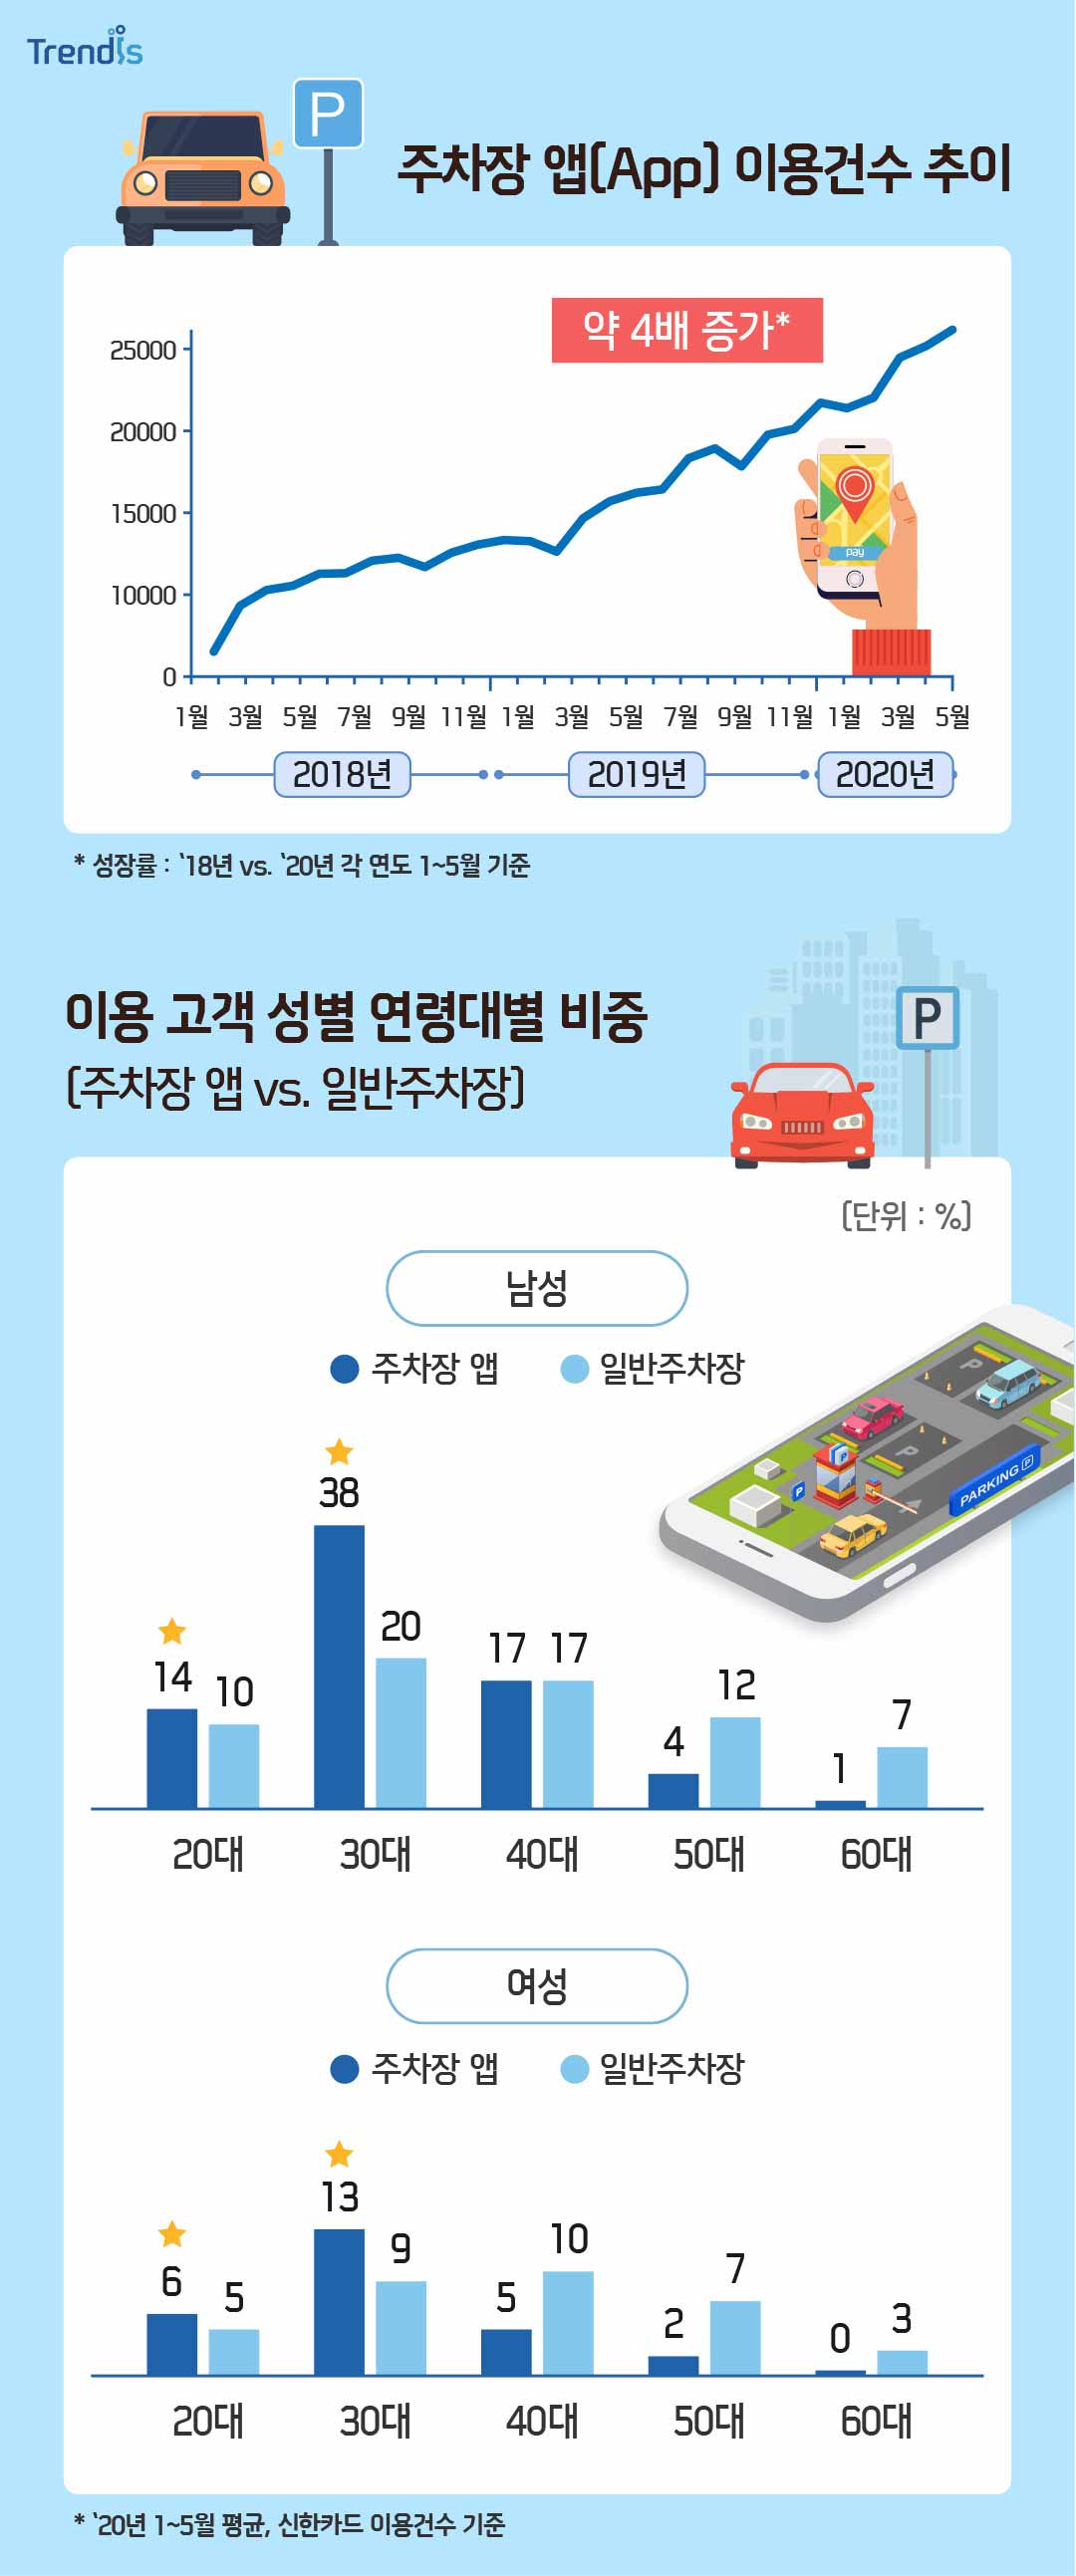 주차장 앱 이용건수 추이와 이용고객 성별 연령대별 비중 그래프